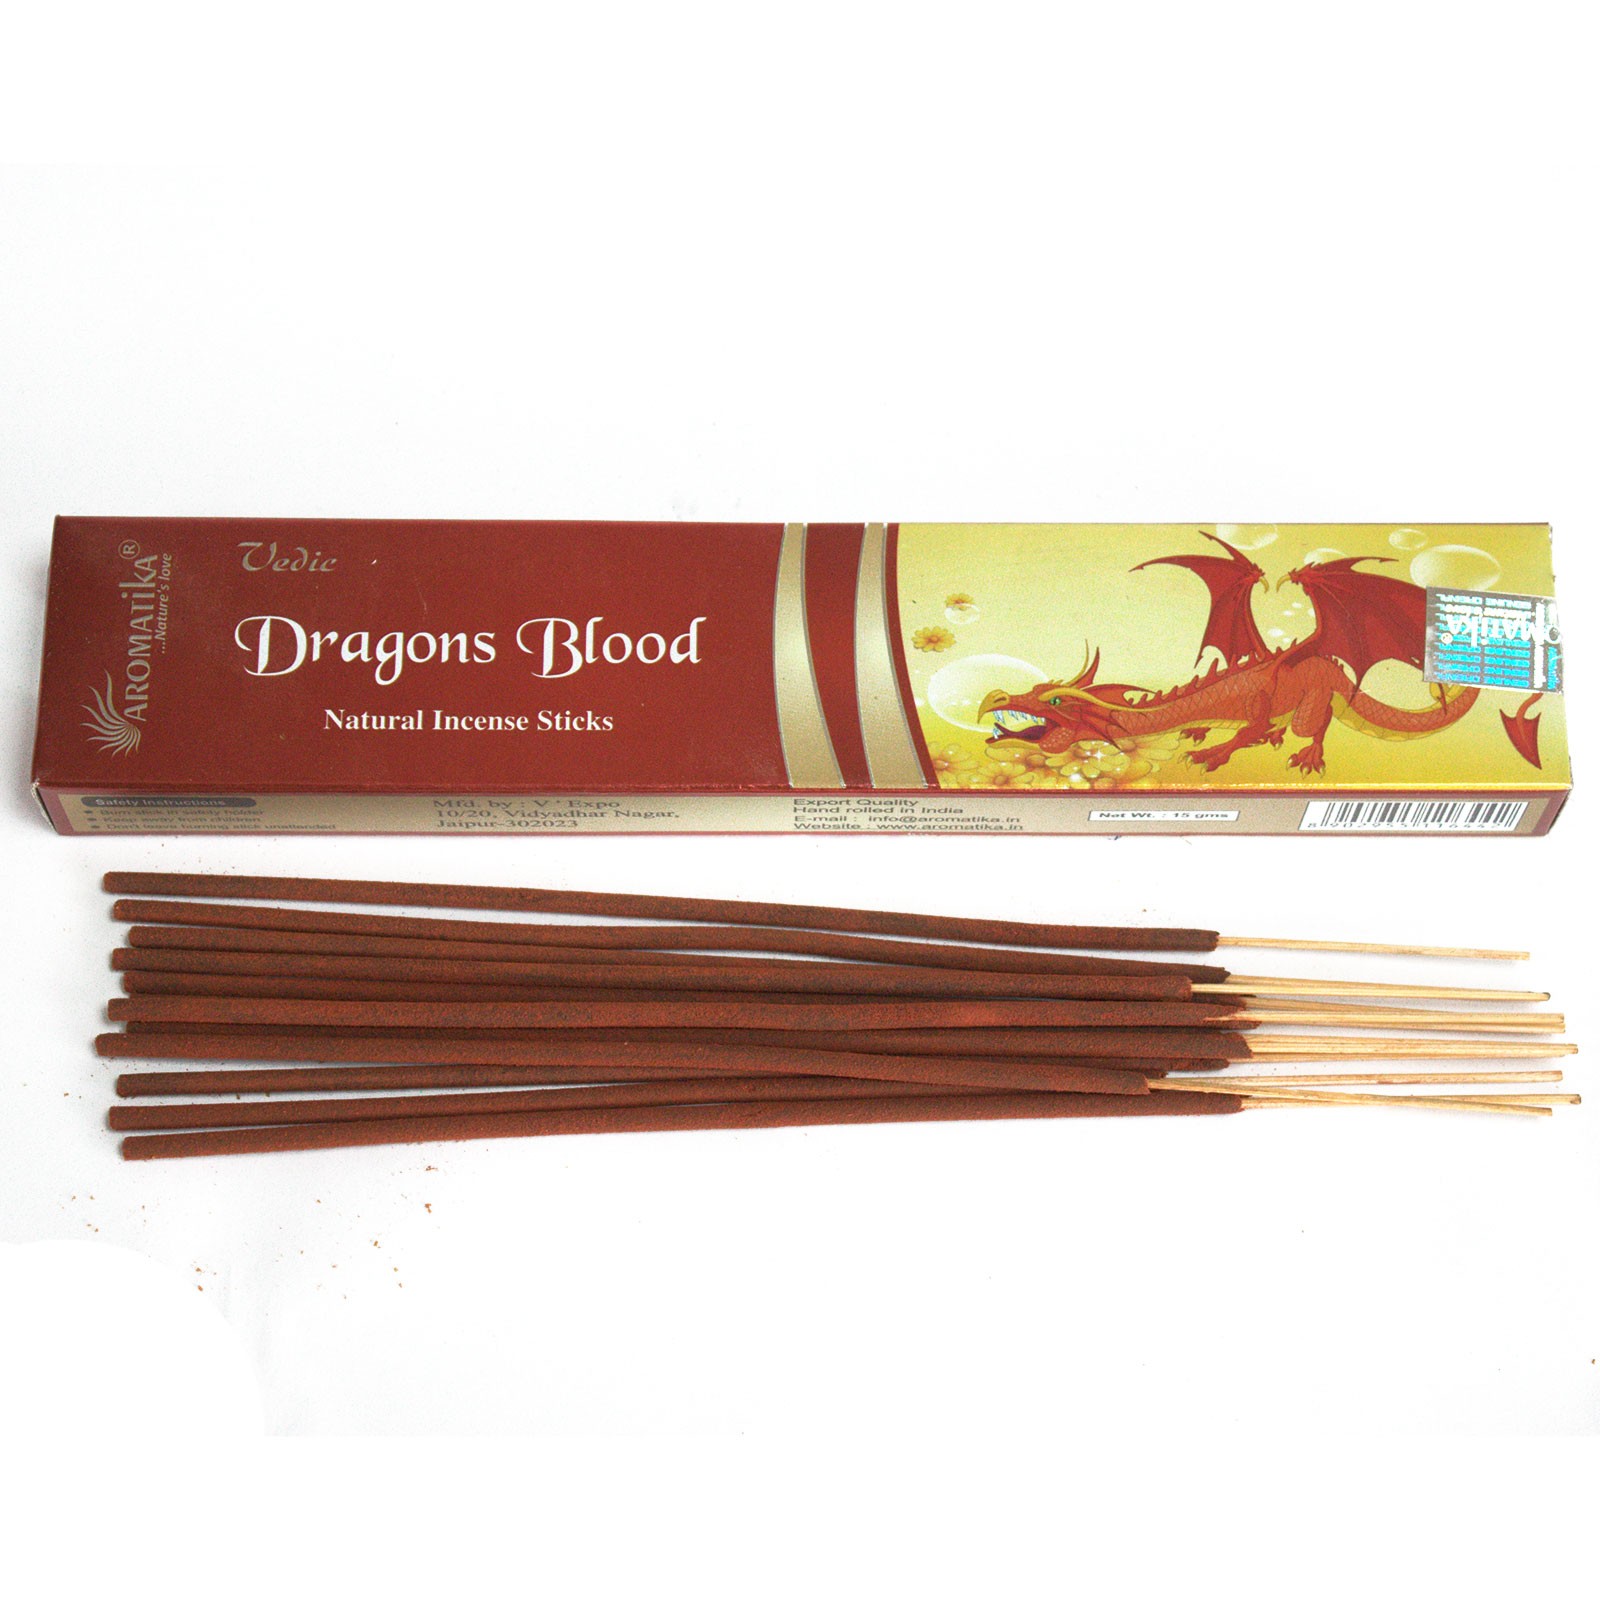 Vedic Incense Sticks Dragons Blood